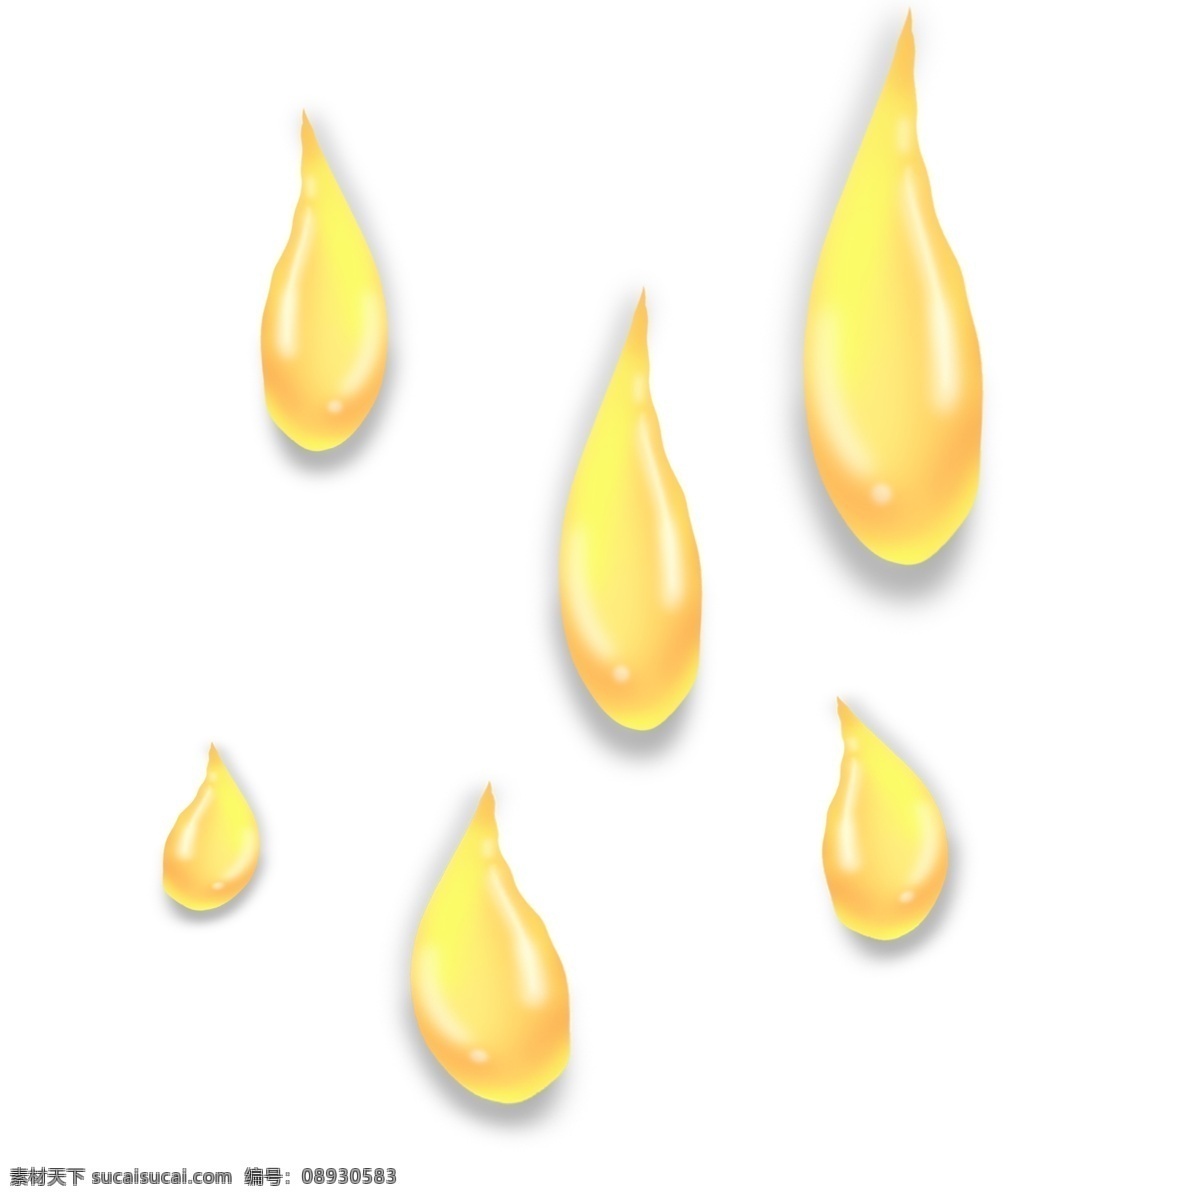 浅 金色 下落 水滴 立体 油 滴 油滴 水 气泡 浅色 浅金色 浅黄色 下降 流动 细长 尖 立体感 卡通